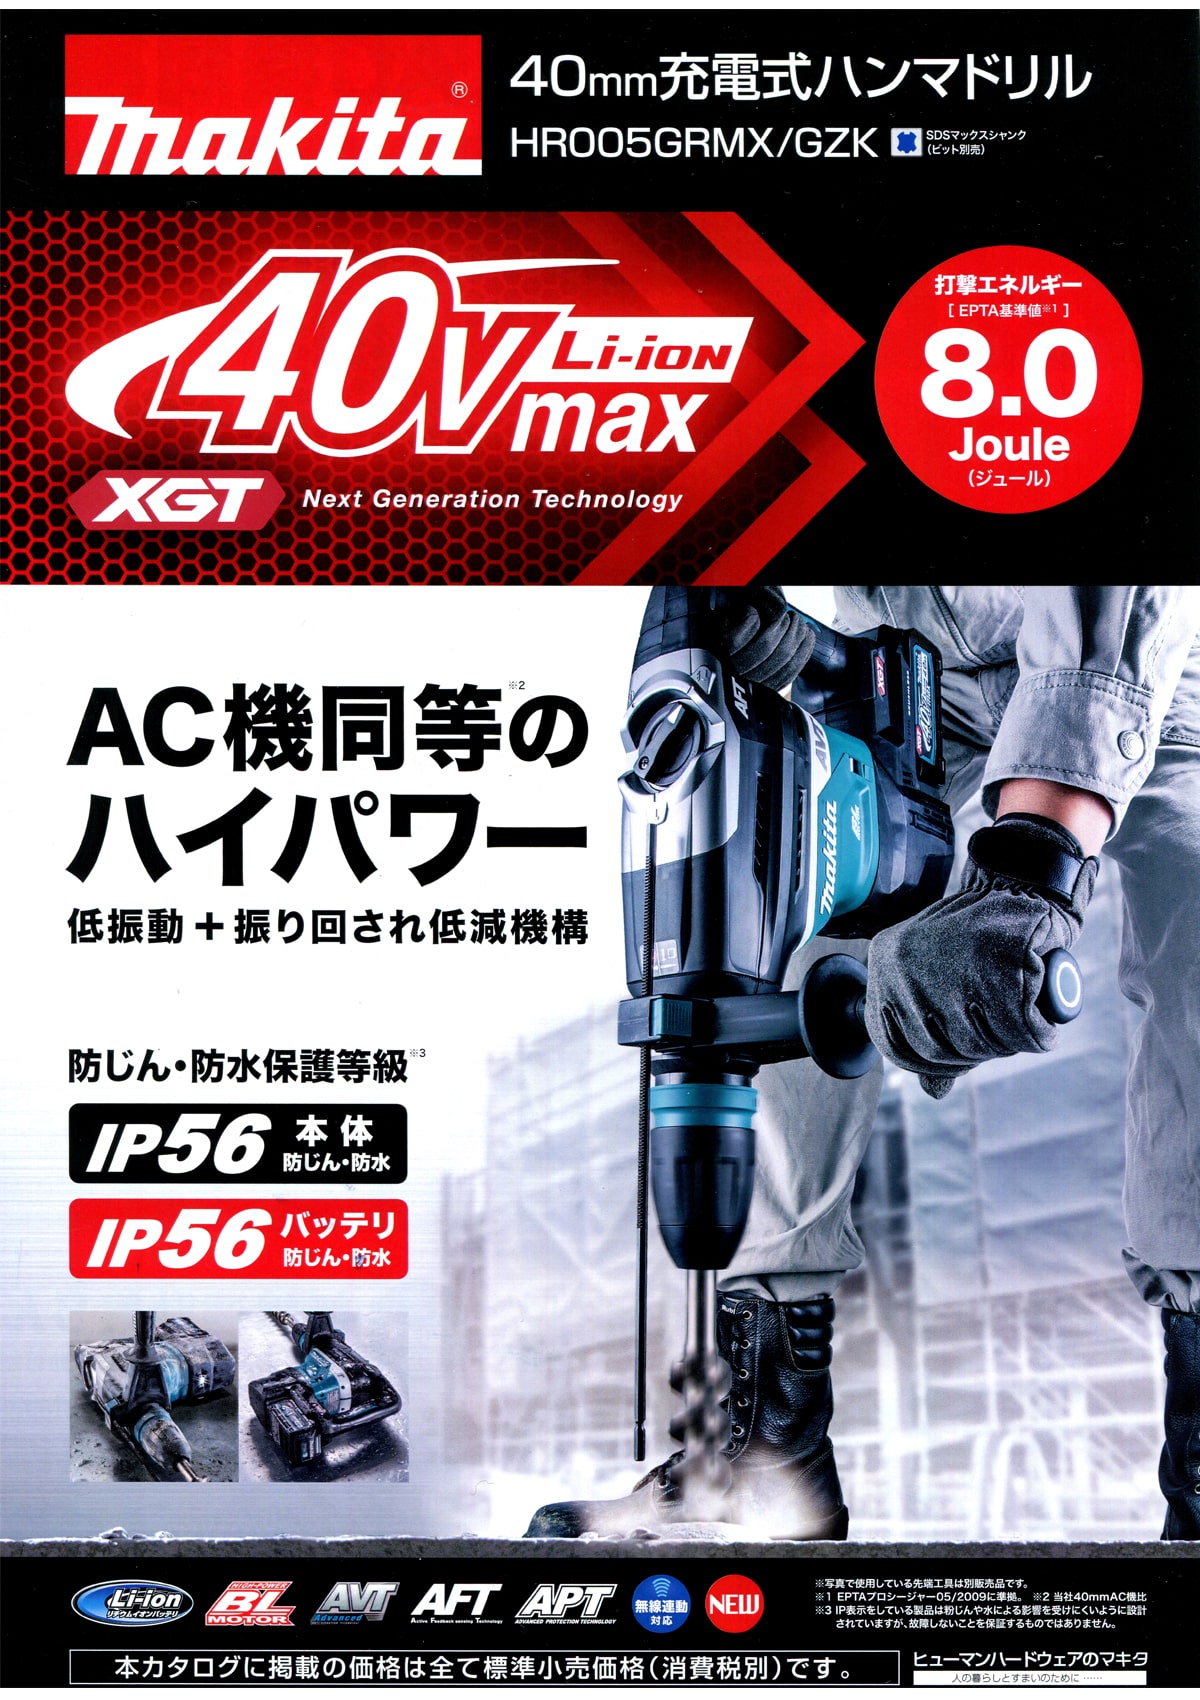 マキタ HR005GRMX 40Vmax 40mm充電式ハンマードリル ウエダ金物【公式サイト】